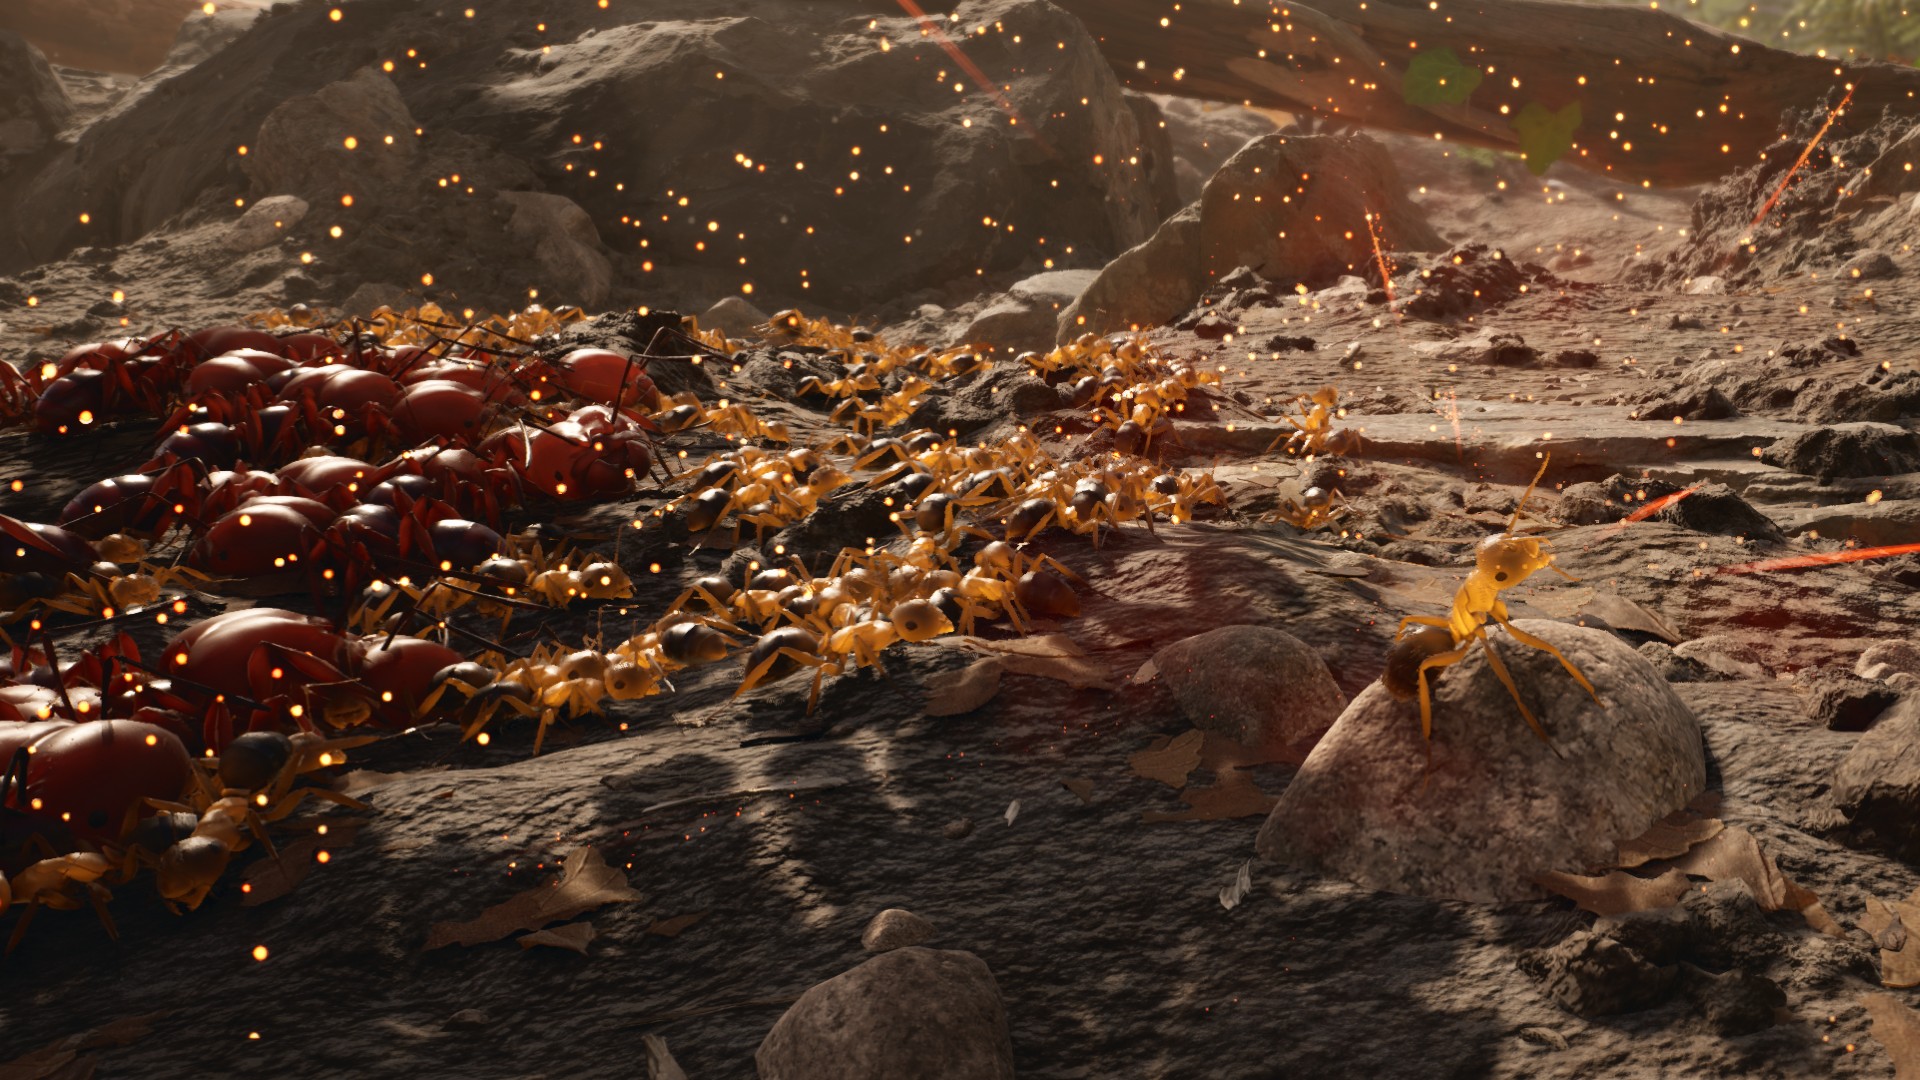 Empire of the Ants RTS-Spiel: Eine Ameise führt eine Schlacht im neuen RTS-Spiel Empire of the Ants an